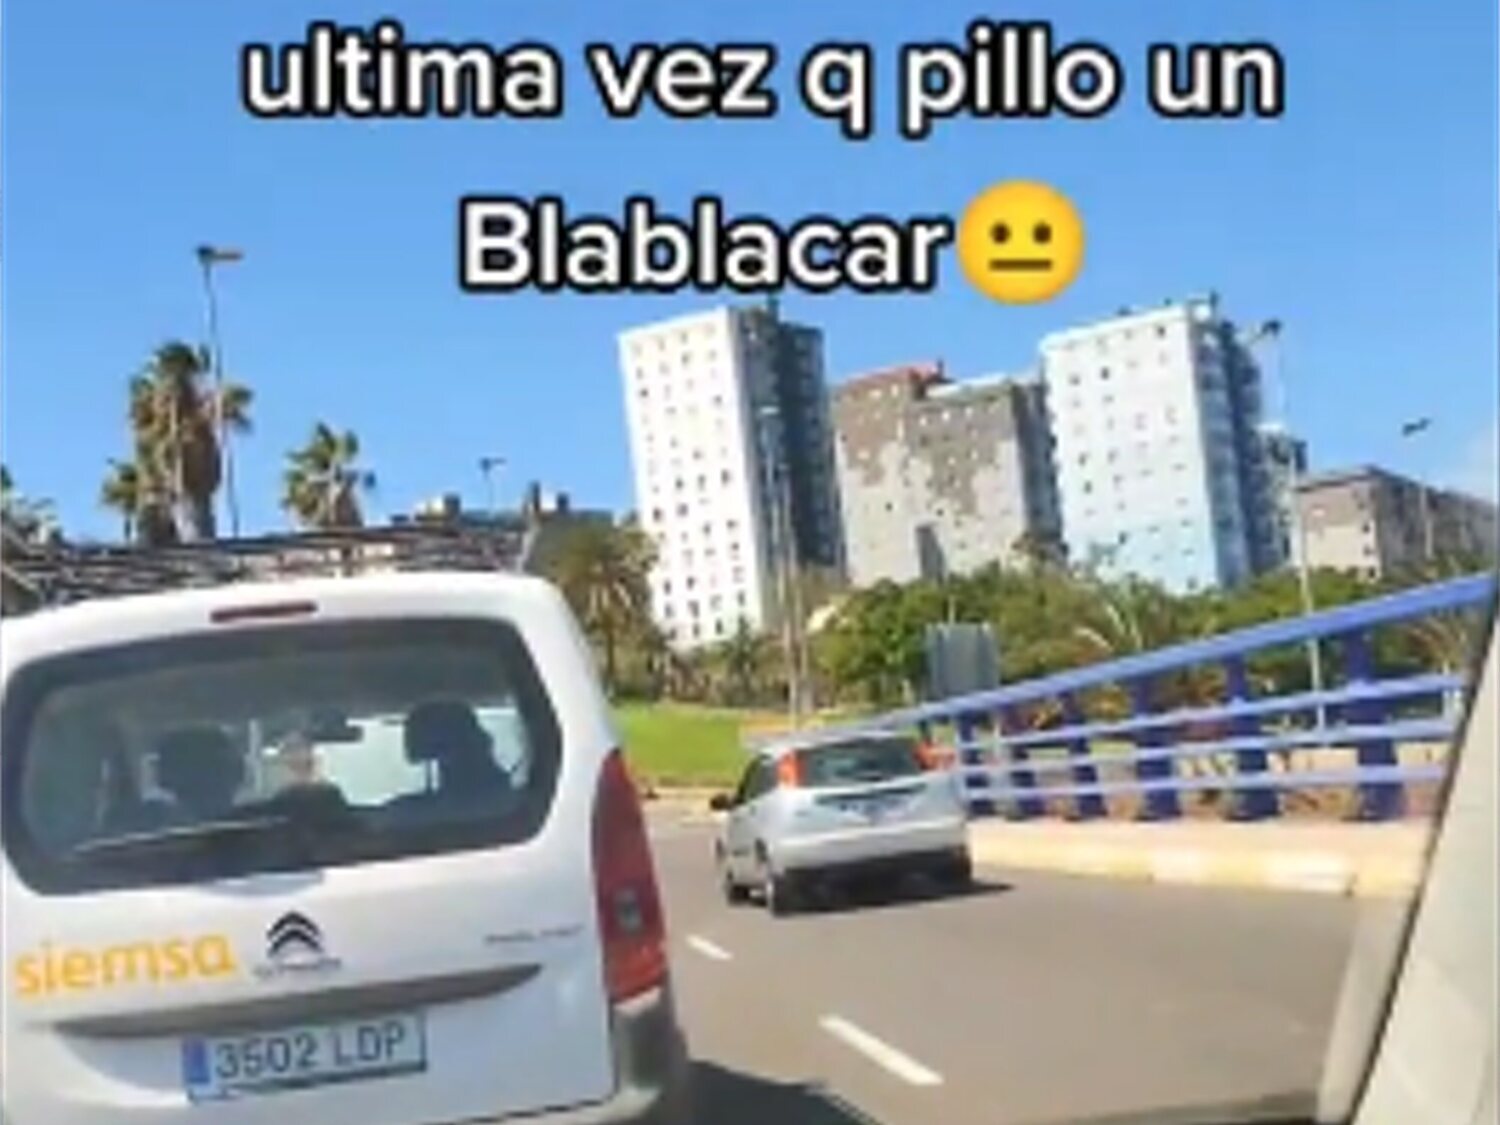 "La última vez que comparto coche": el susto de un hombre en Tenerife al usar una app para viajar con desconocidos